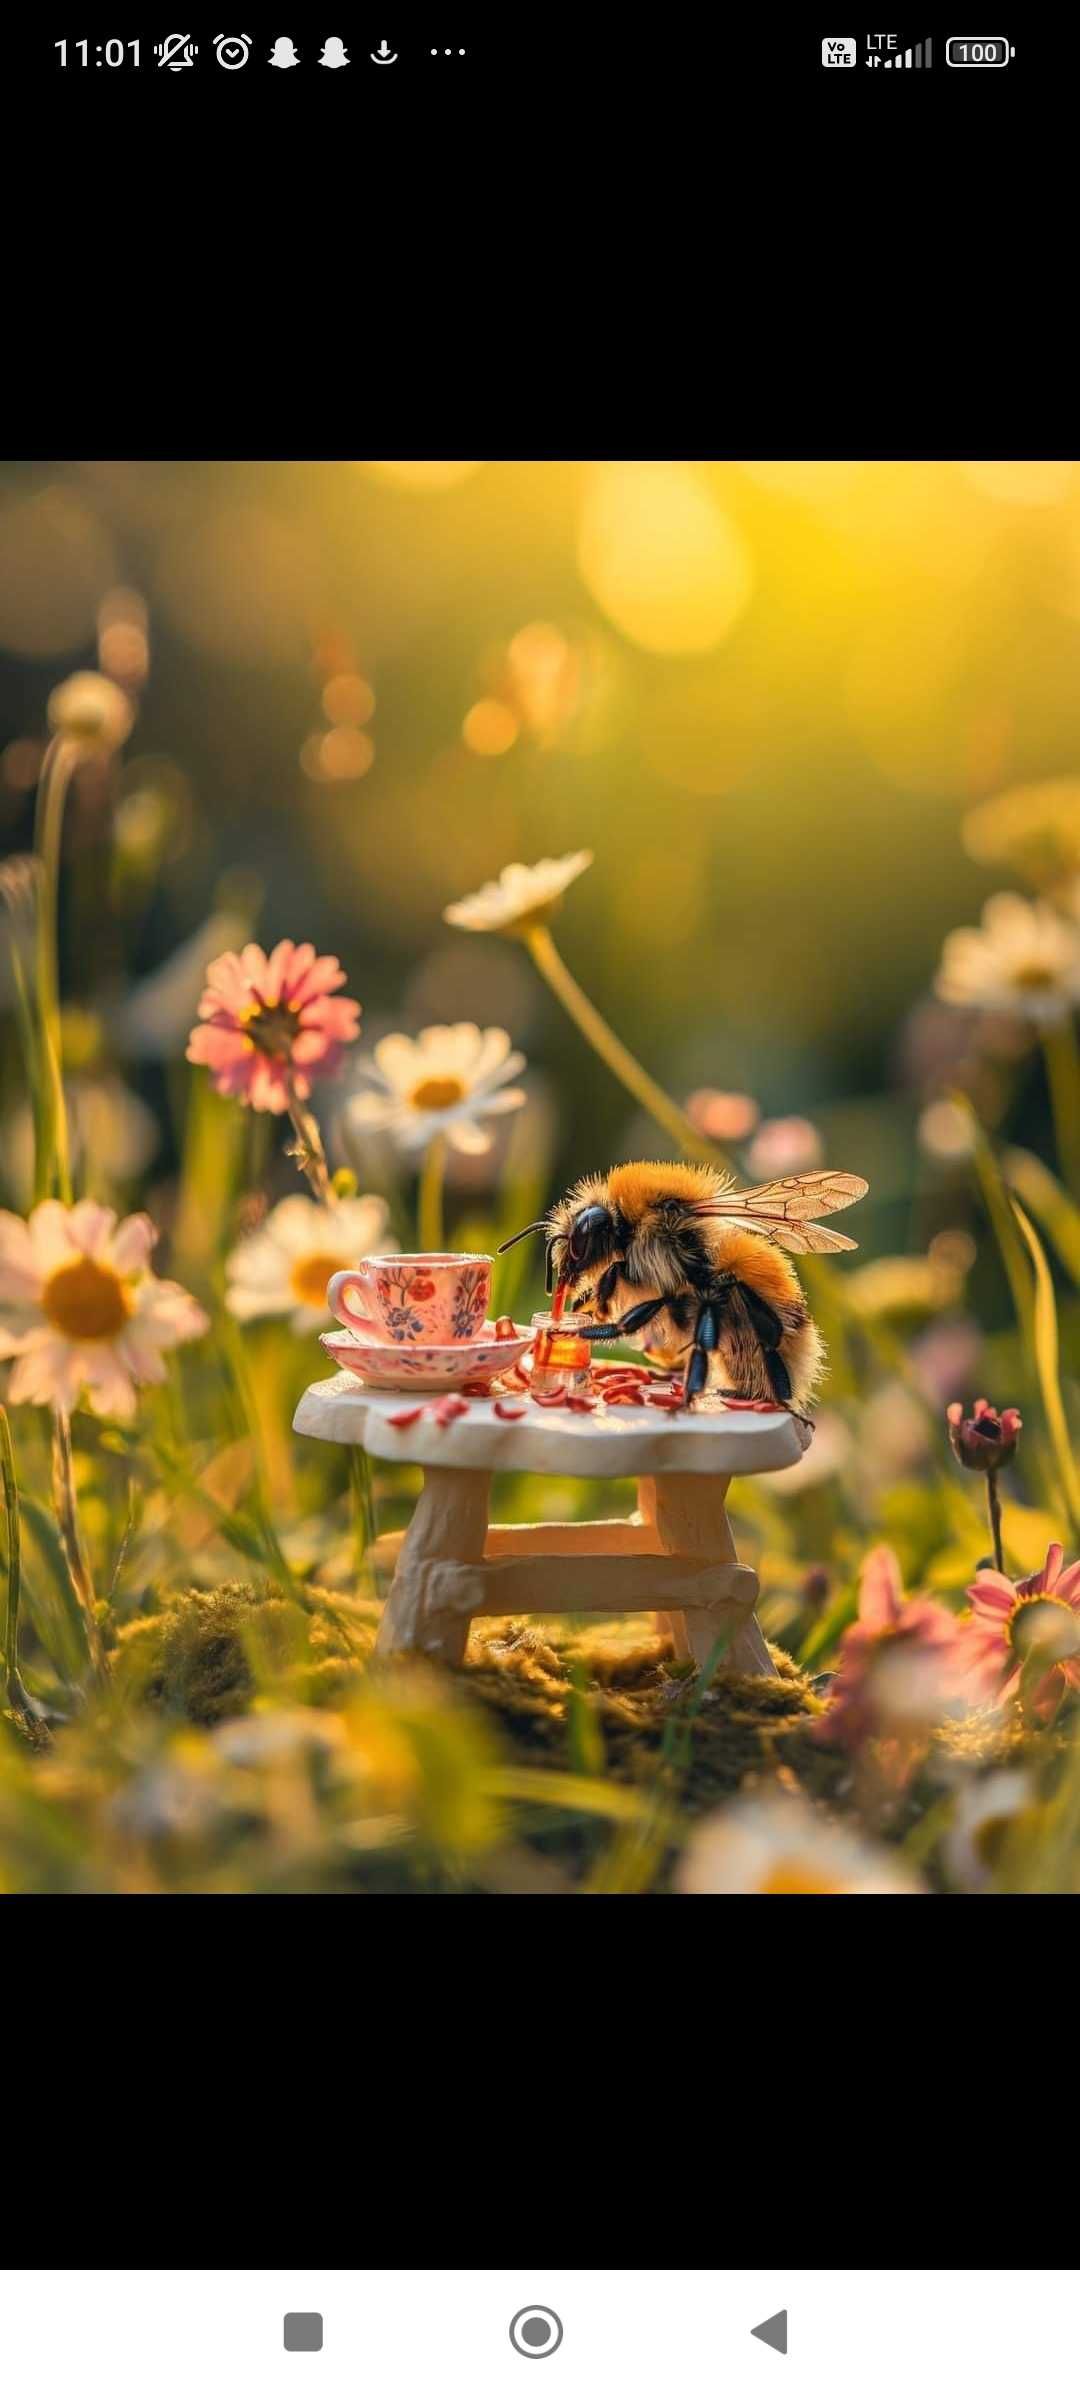 Złapanie i zbiór rójki pszczelej